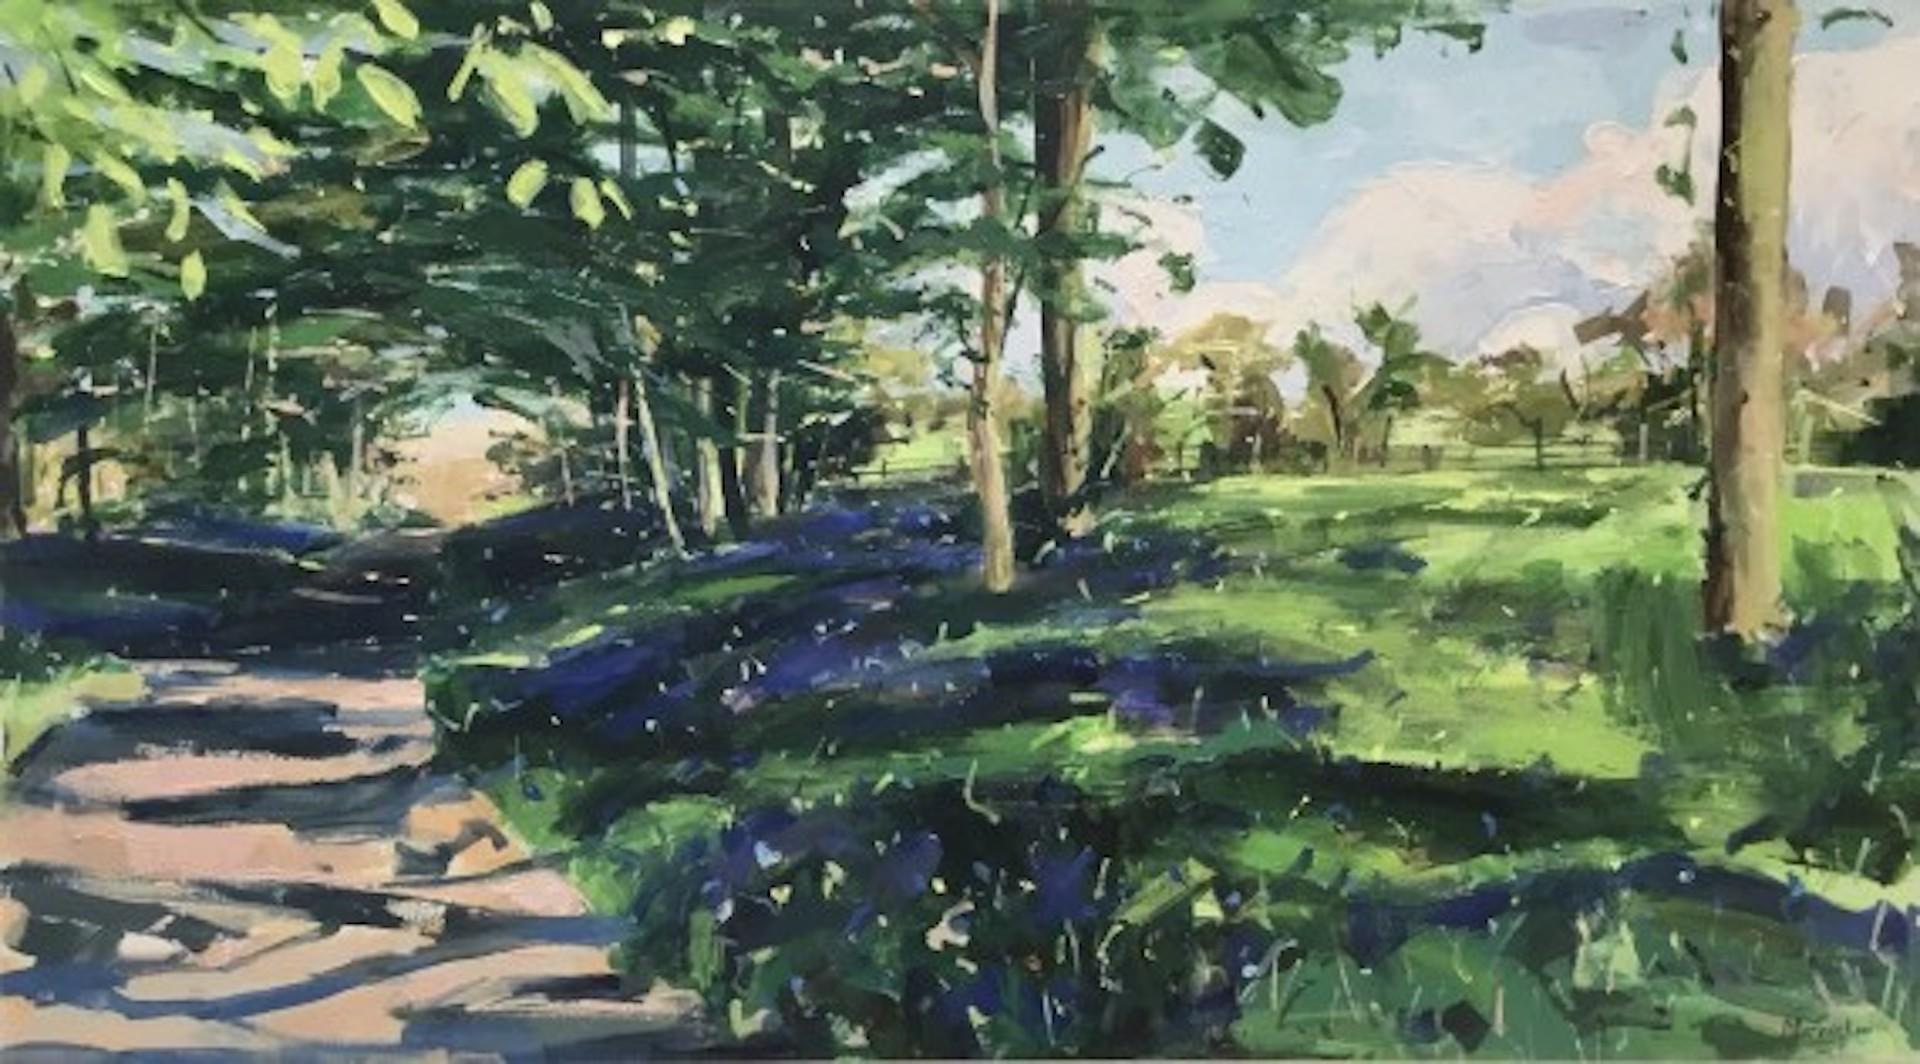 Landscape Painting Sarah Ollerenshaw - Votre Song Refreshed My Soul (Votre chanson a rafraîchi mon âme), Art des bois, art floral, art original